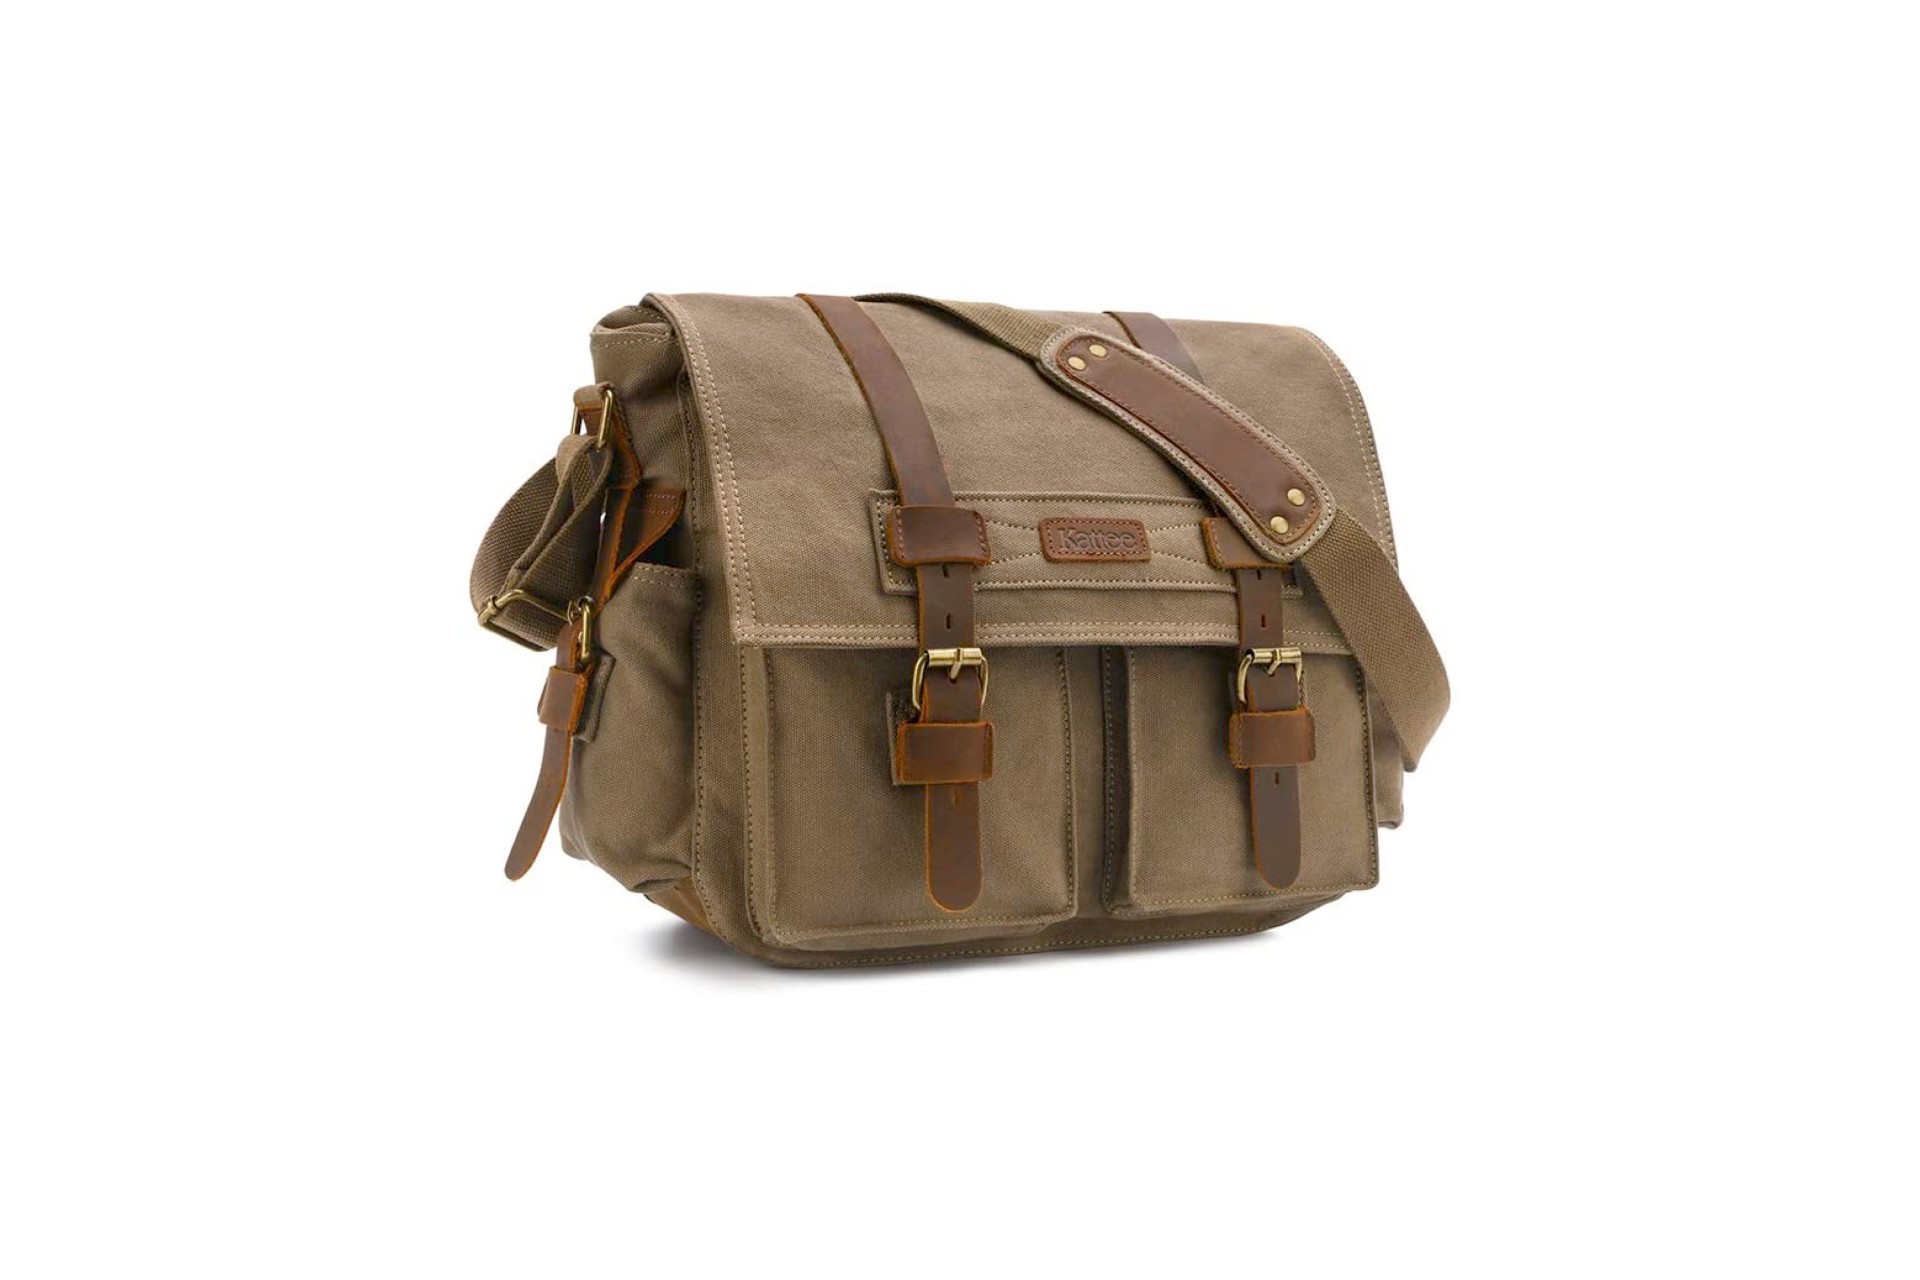 Sweetbriar Classic Messenger Bag - Vintage Canvas Shoulder Bag for All-Purpose